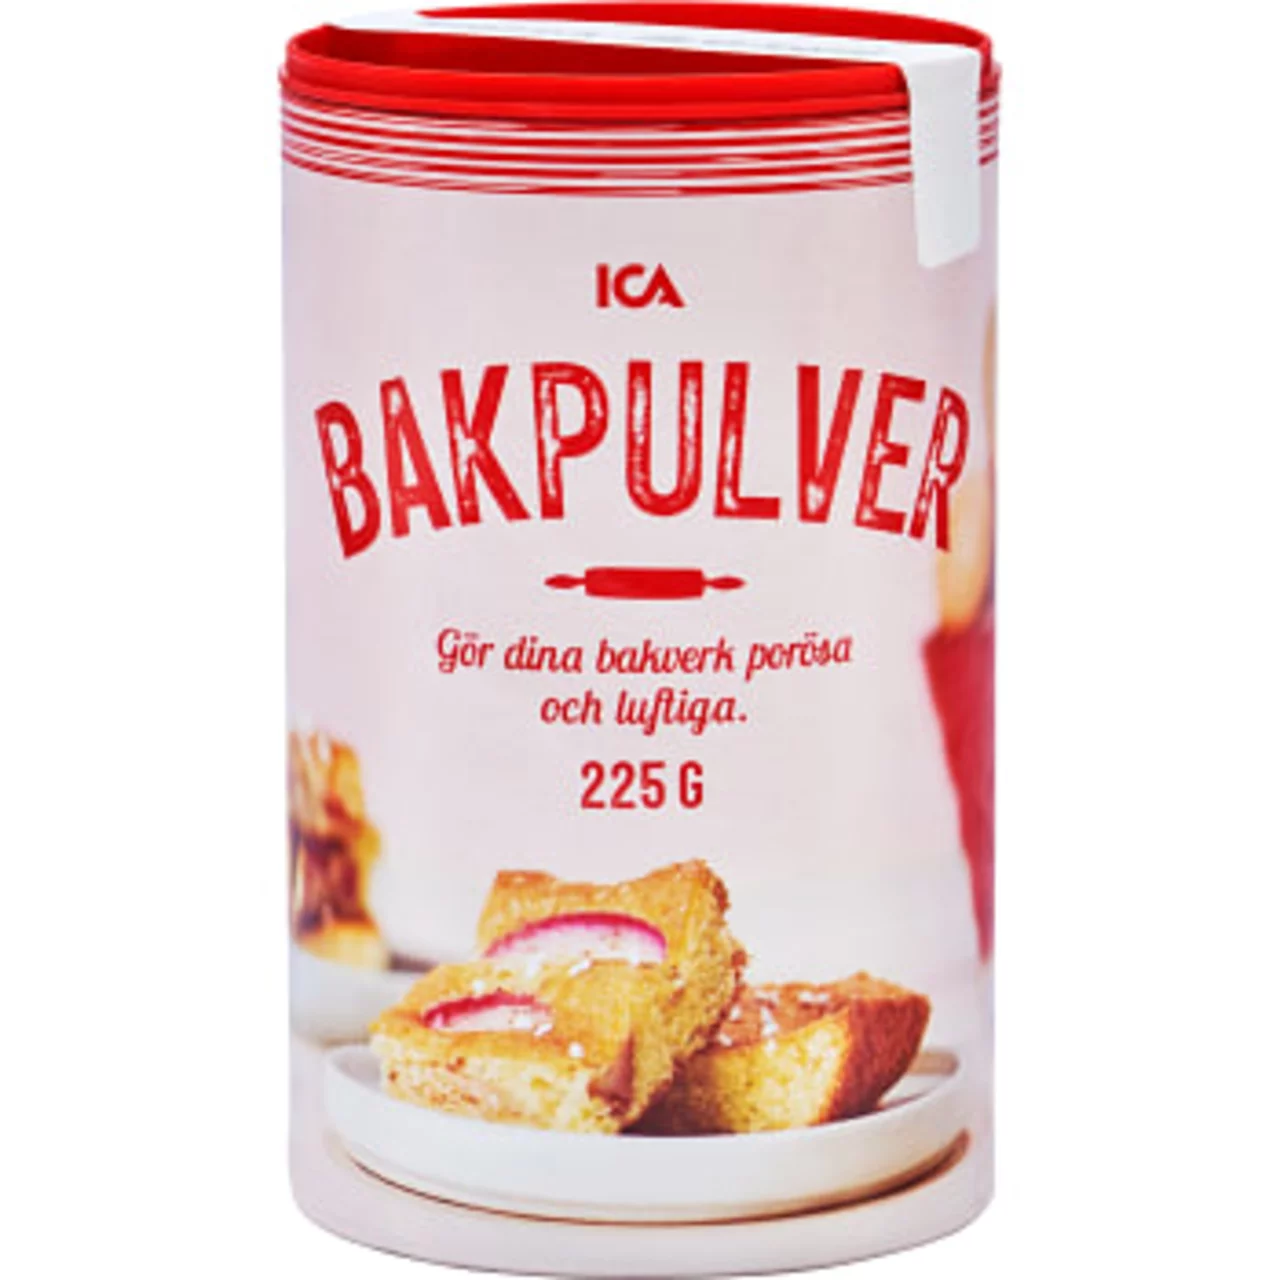 schwedische lebensmittel online kaufen bestellen Backpulver bakpulver